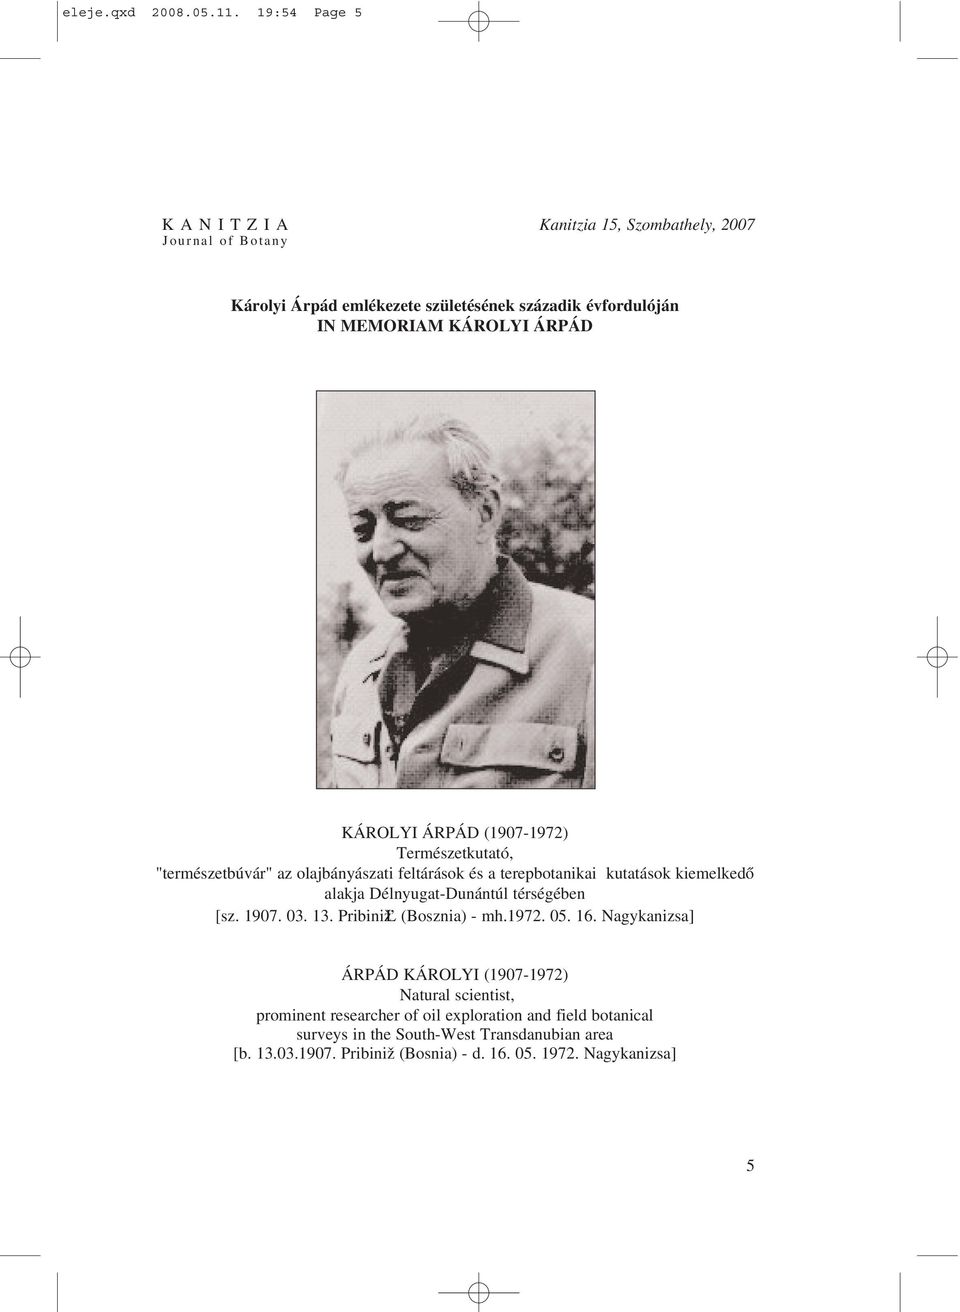 KÁROLYI ÁRPÁD (1907-1972) Természetkutató, "természetbúvár" az olajbányászati feltárások és a terepbotanikai kutatások kiemelkedõ alakja Délnyugat-Dunántúl